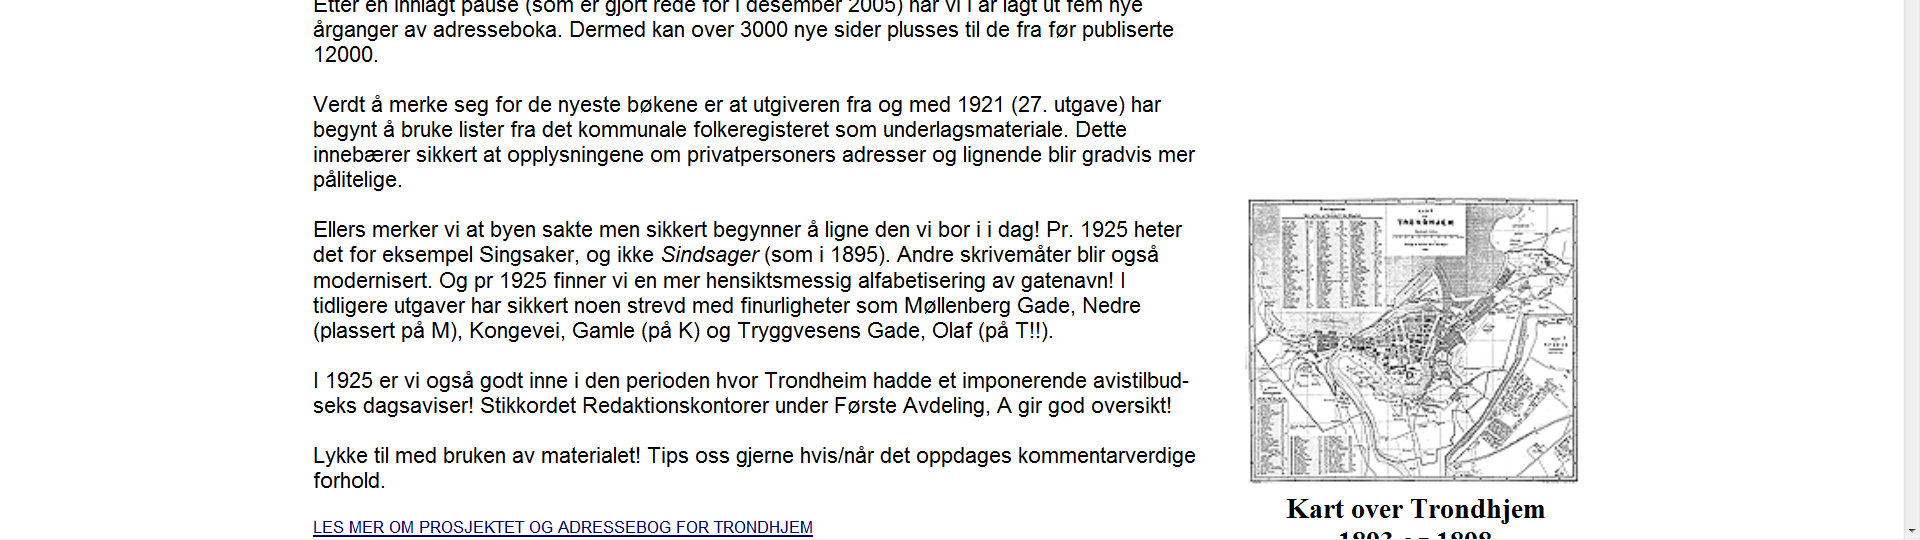 Adressebog for Trondheim: 1888 1925, inkl kart over Trondheim 1893og 1898 http://www.tfb.no/db/adresseboktrondheim/ Andre kilder: Trøndersk personalhistorie: Joh. E.